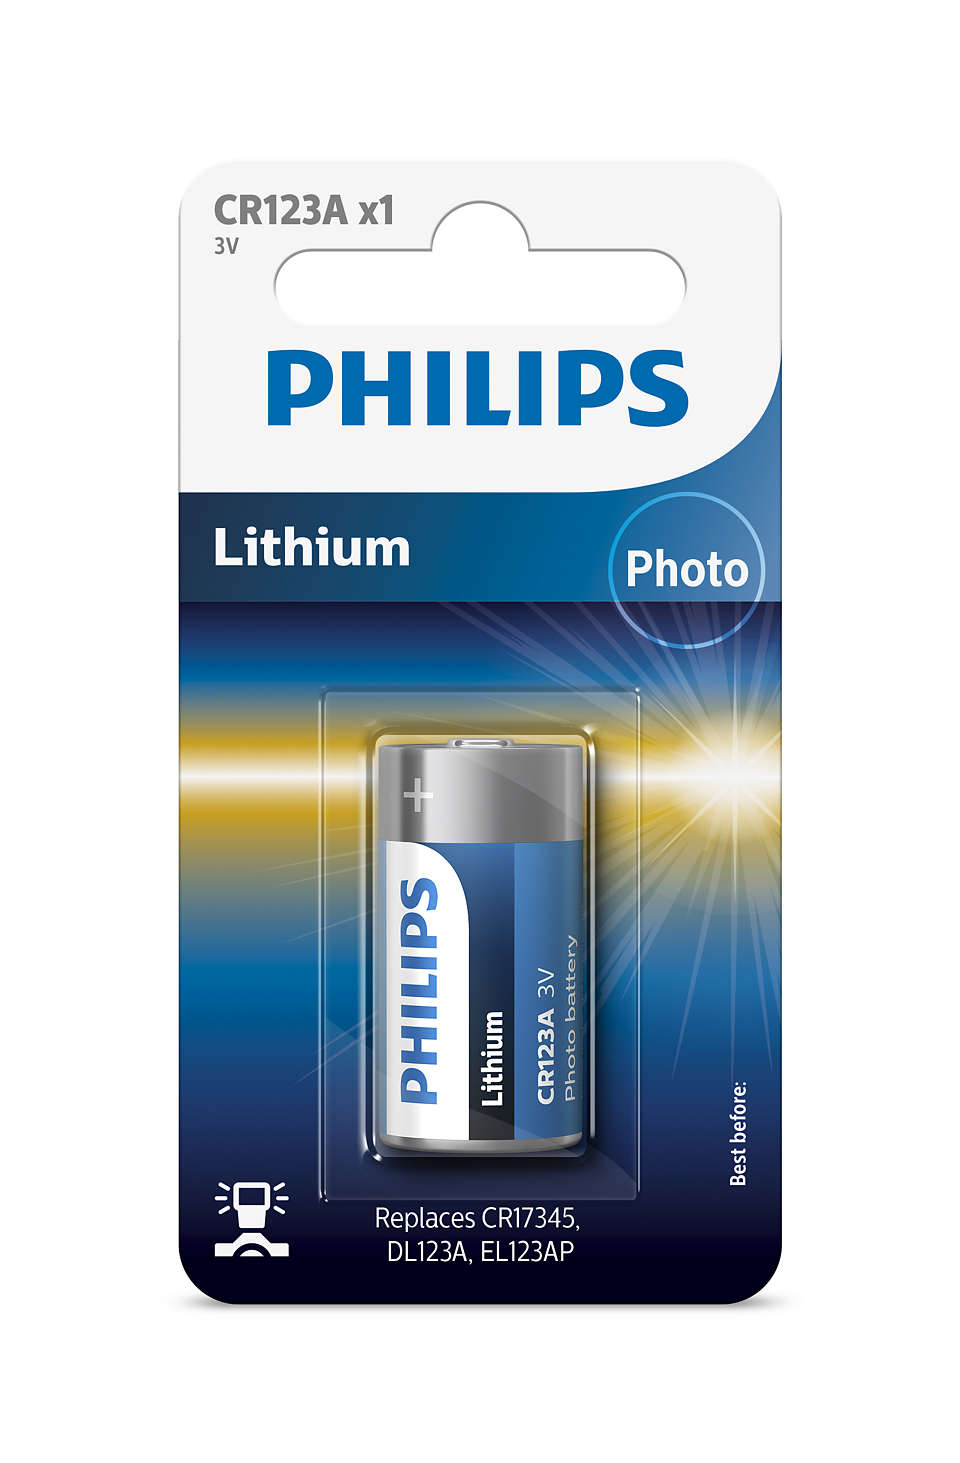 Hoogwaardige lithiumtechnologie voor uw camera